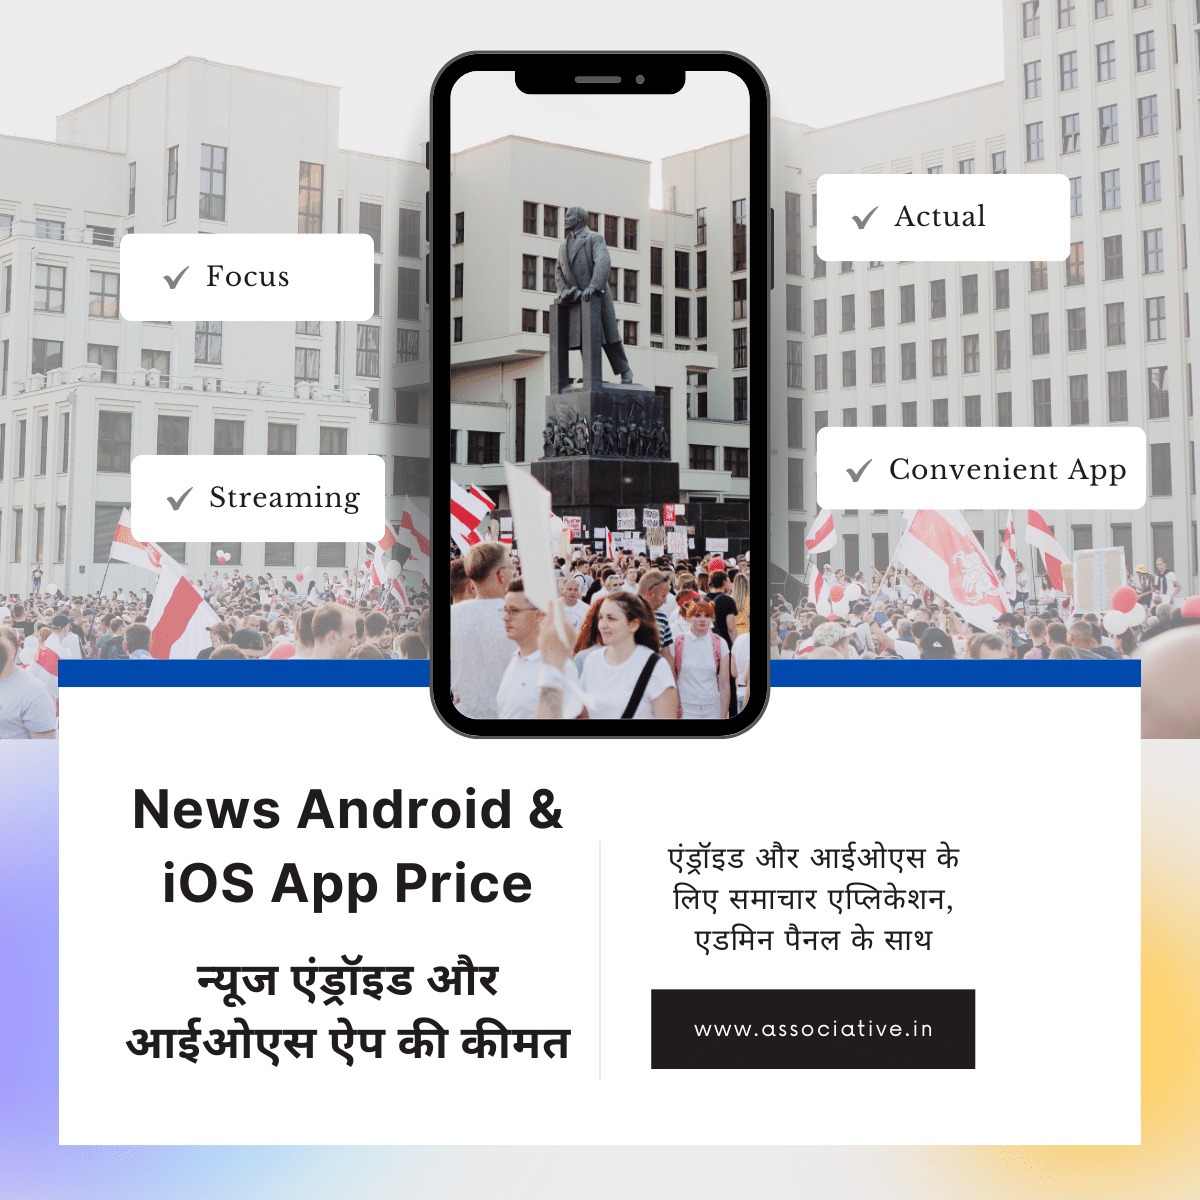 News Android & iOS App Price

न्यूज एंड्रॉइड और आईओएस ऐप की कीमत